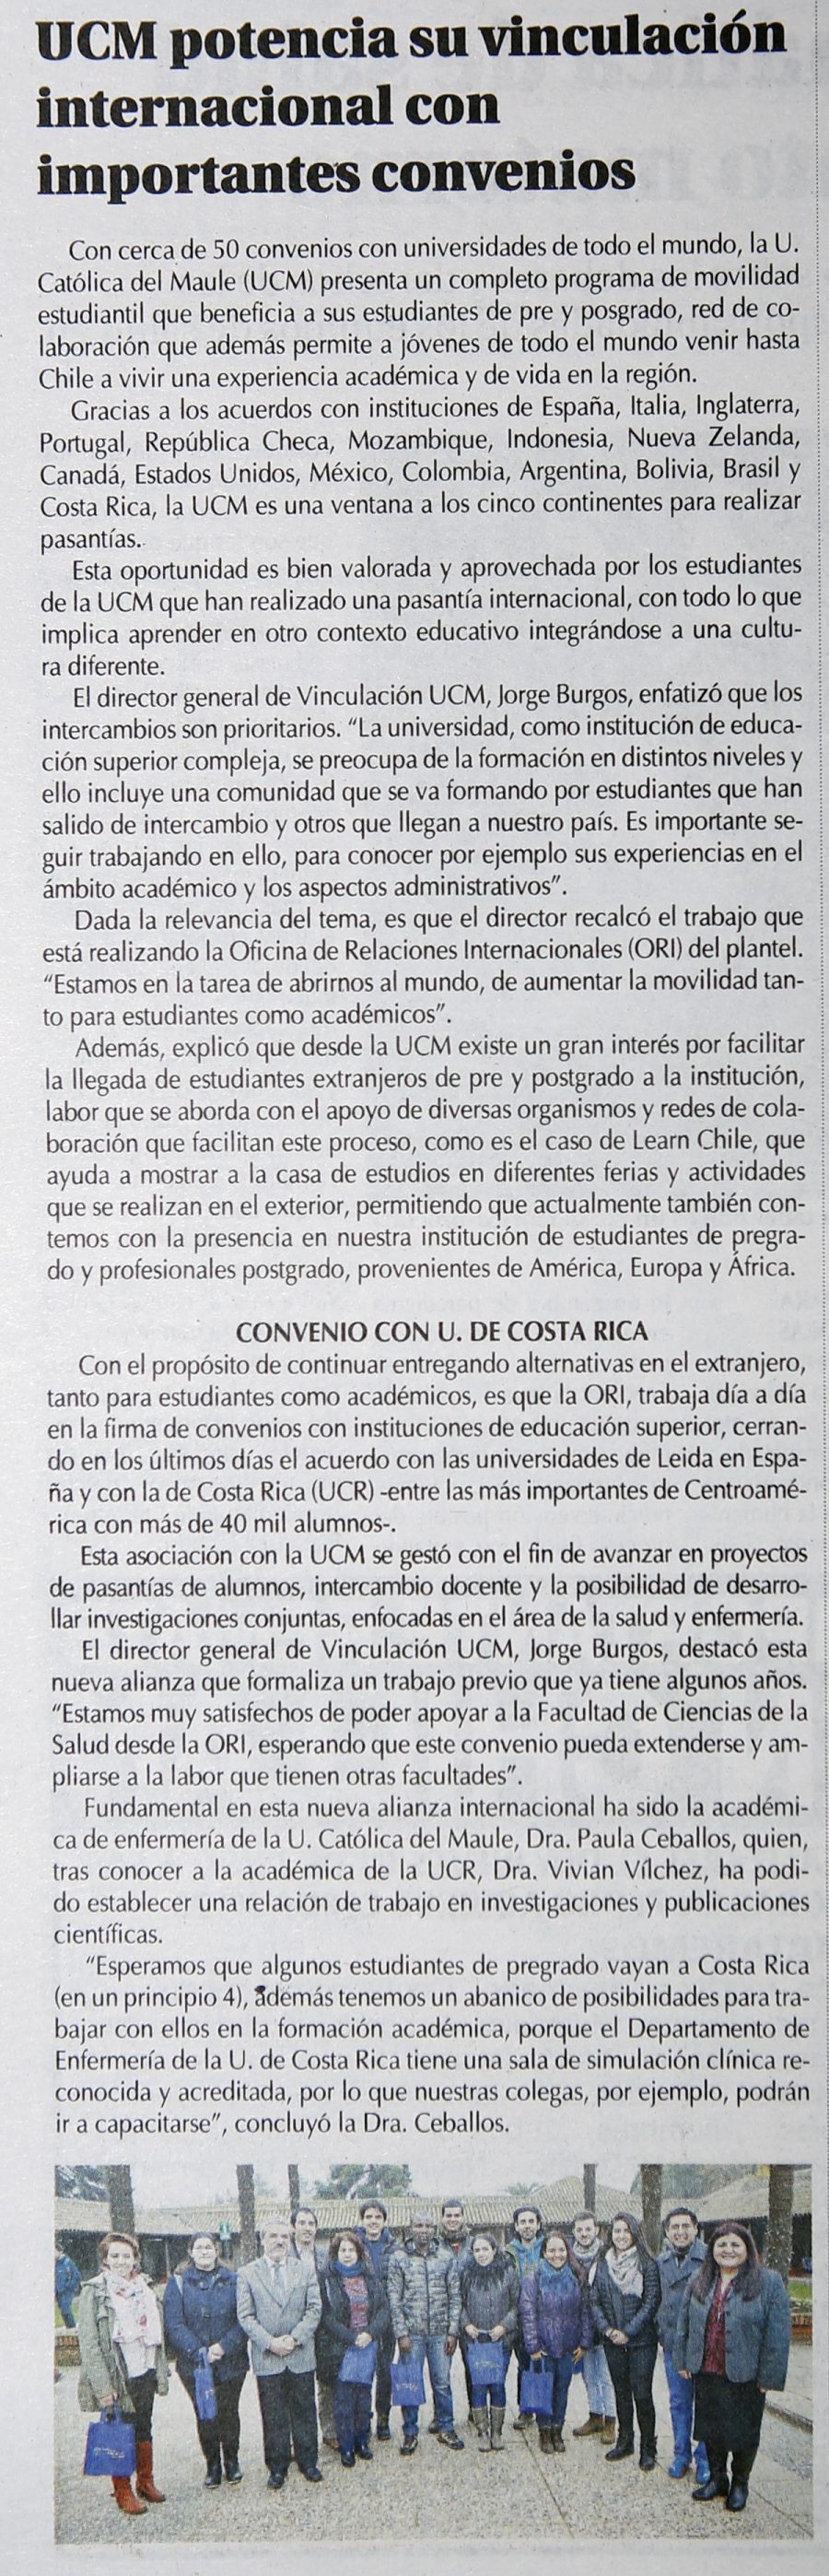 28 de mayo en Diario El Centro: “UCM potencia vinculación internacional con importantes convenios”